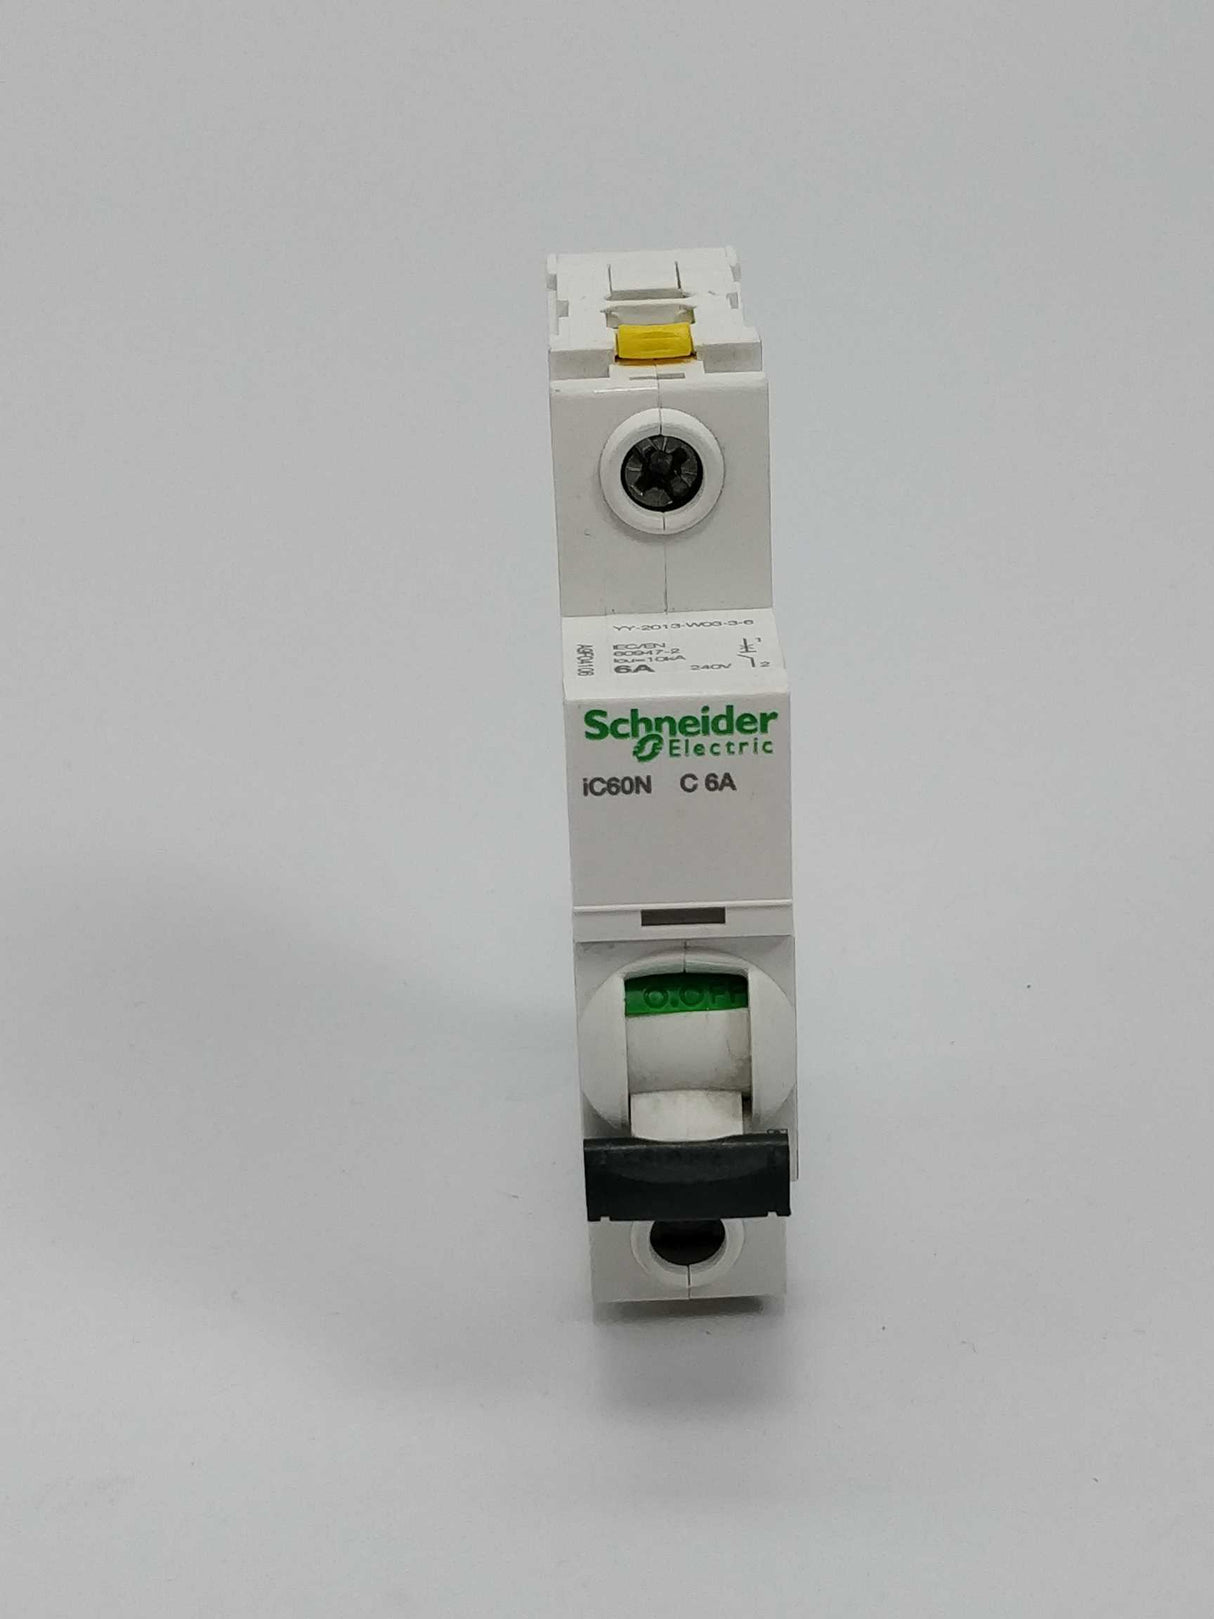 Schneider Electric iC60N C6A Miniature Circuit breaker